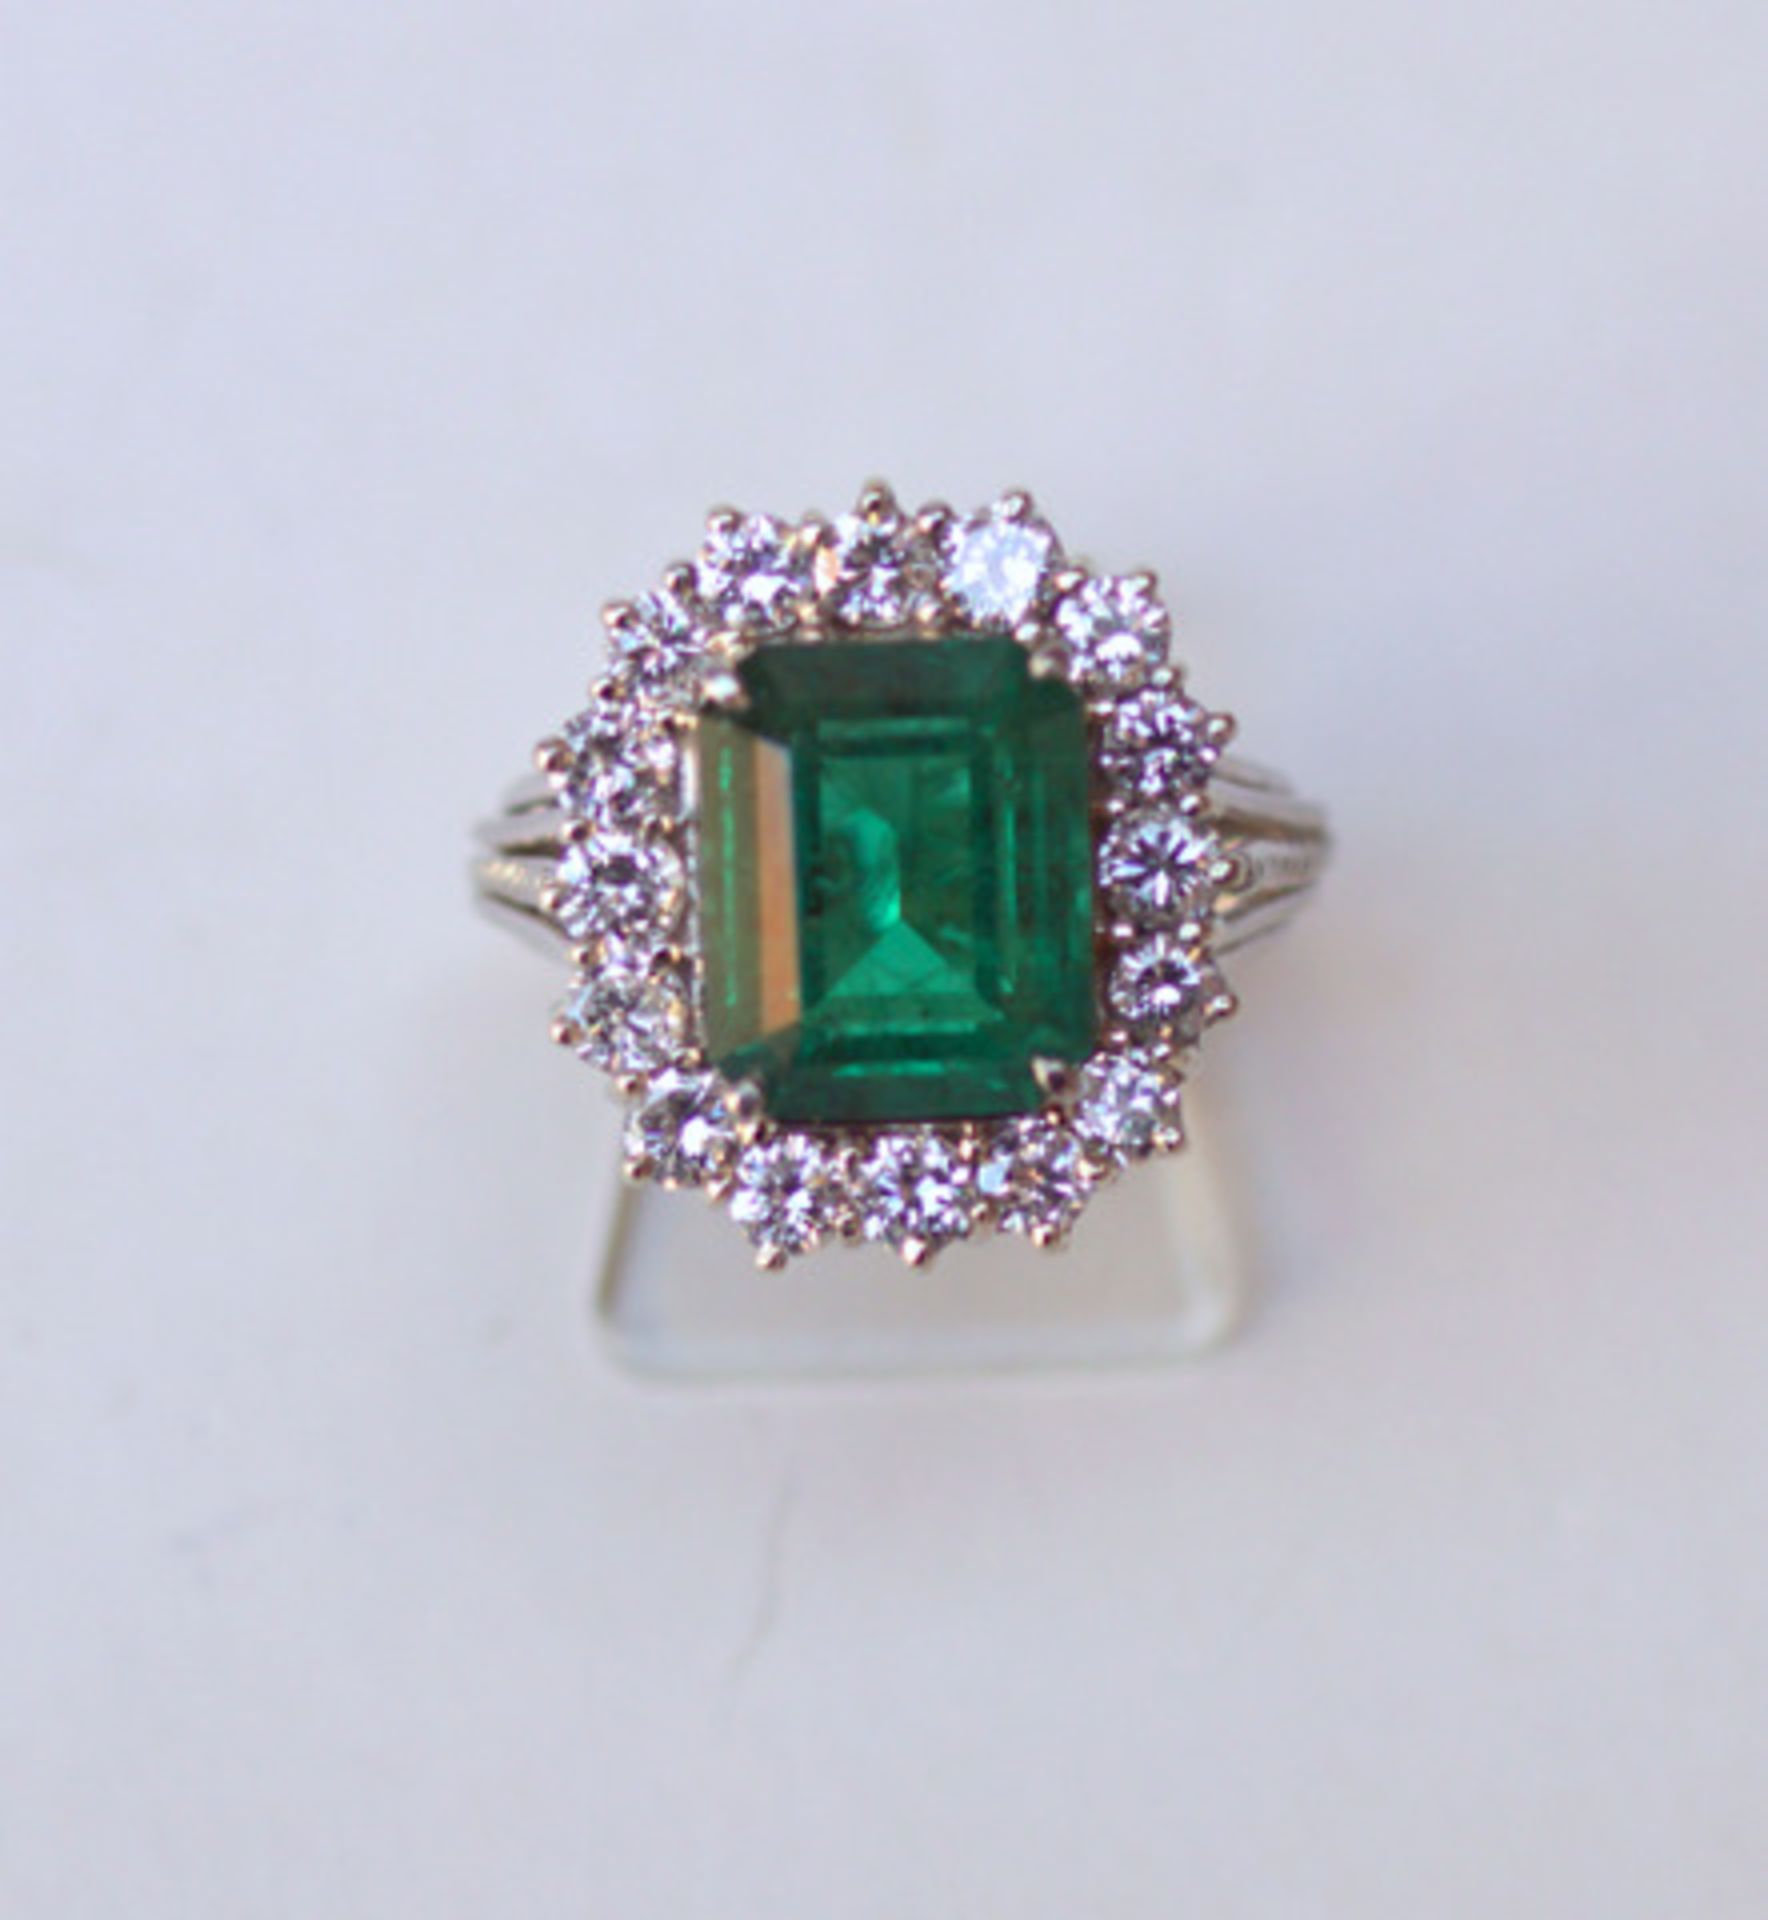 Halo-Ring mit zentralem Smaragd, ca. 1 ct. Brilliantbesatz, 750 WGFünfsträngige Ringschiene, - Image 2 of 3